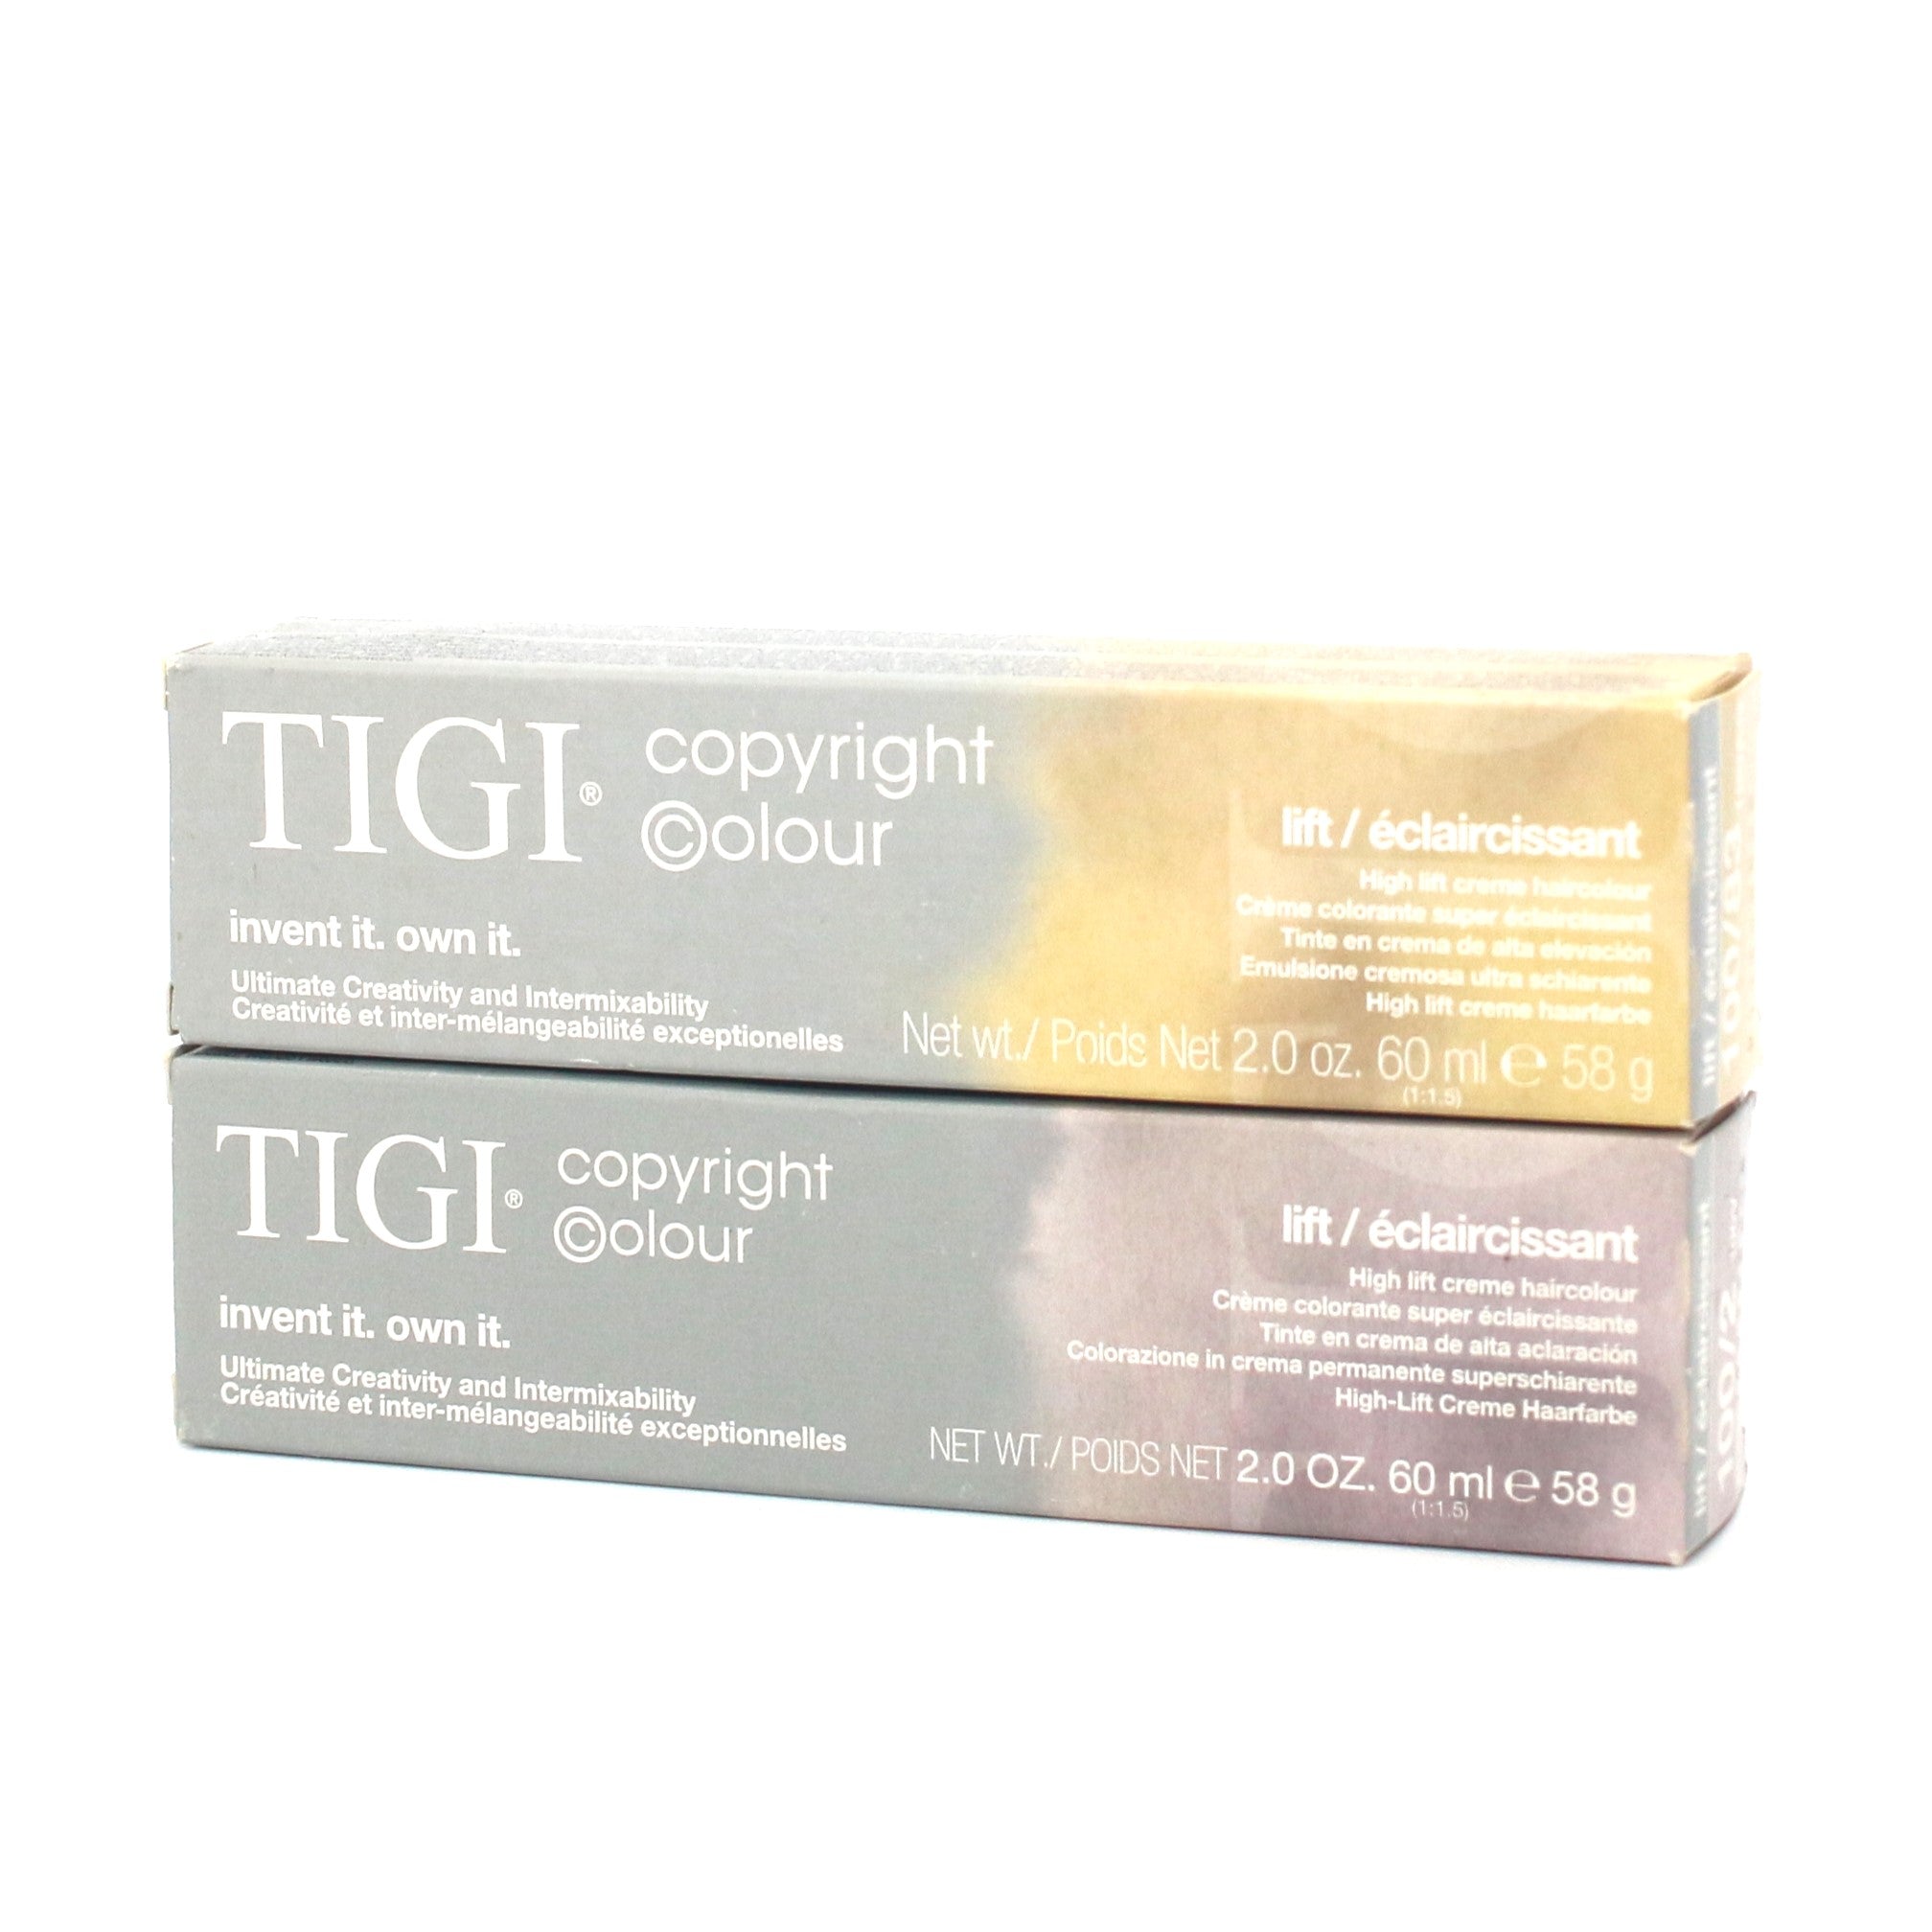 Tigi Copyright Colour High Lift Creme Haircolor 2 oz